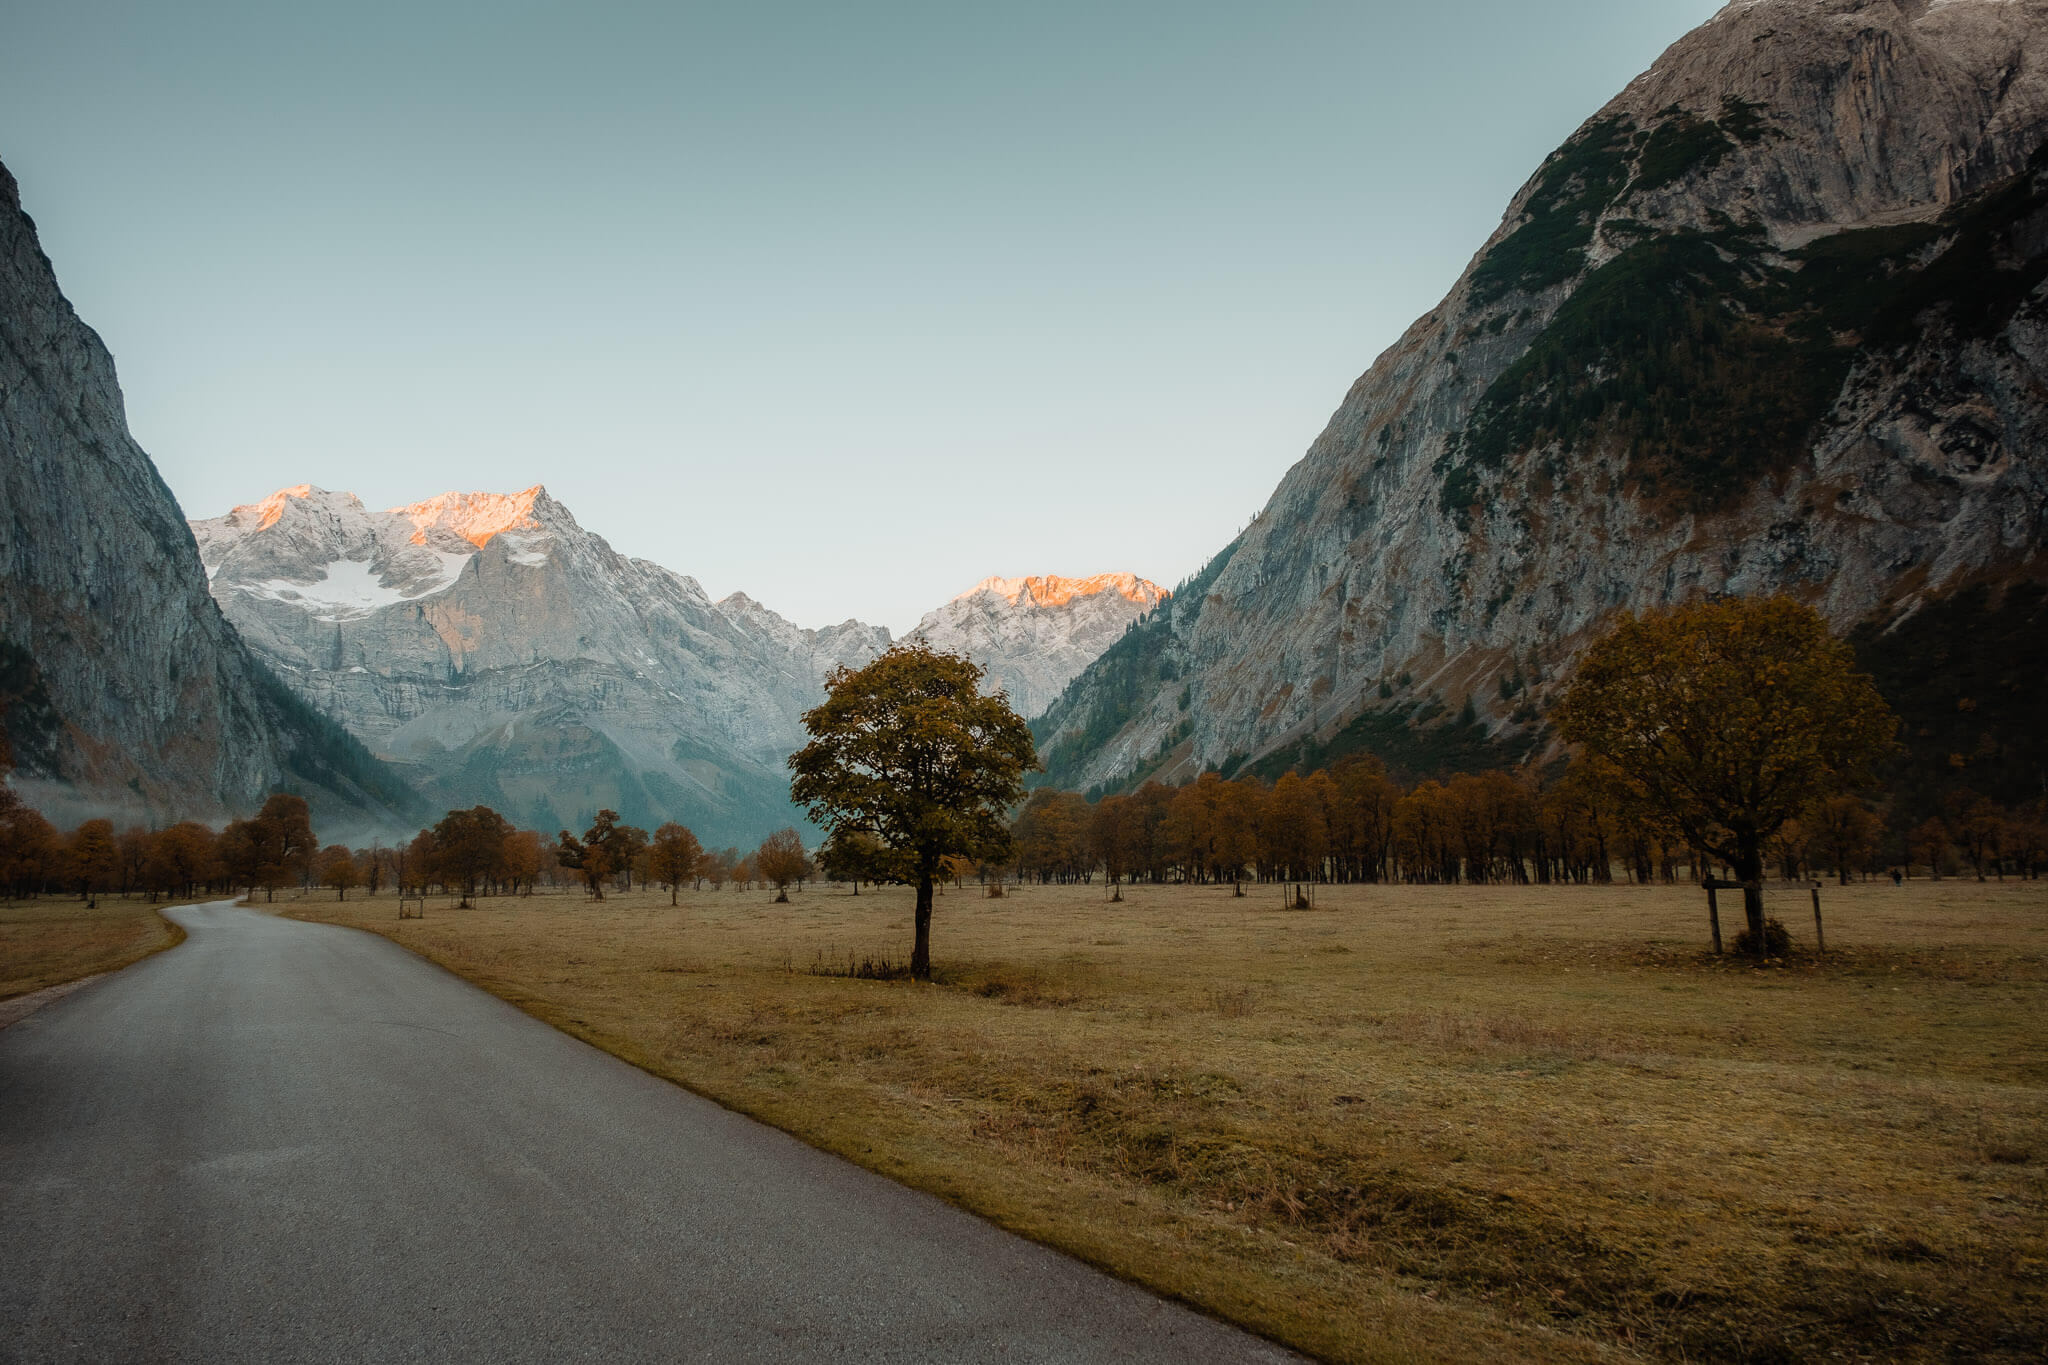 Der Ahornboden Der Große und der Kleine Ahornboden sind beides Almböden mit alten Ahornbeständen, die sich im Herbst wunderschön verfärben. Sie liegen in Tirol in Österreich und sind Teil eines tirolerisch-bayrischen Landschafts- und Naturschutzgebiets.